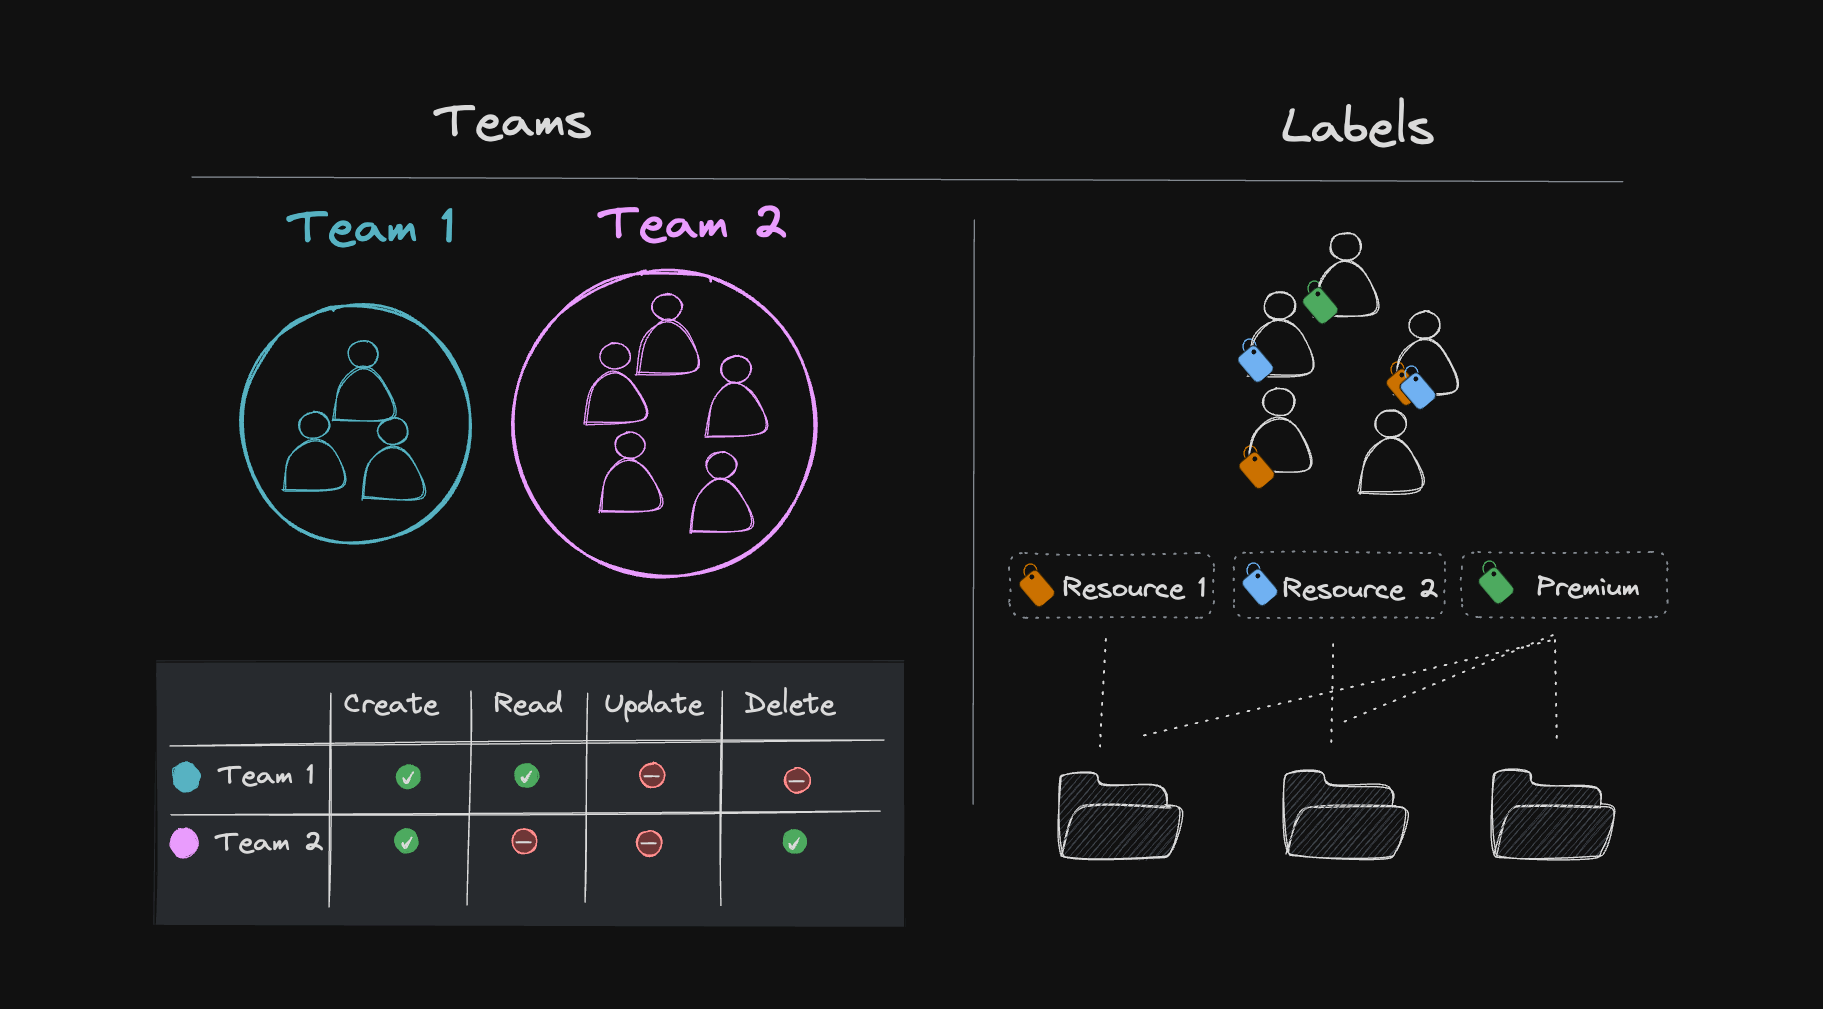 Labels vs Teams